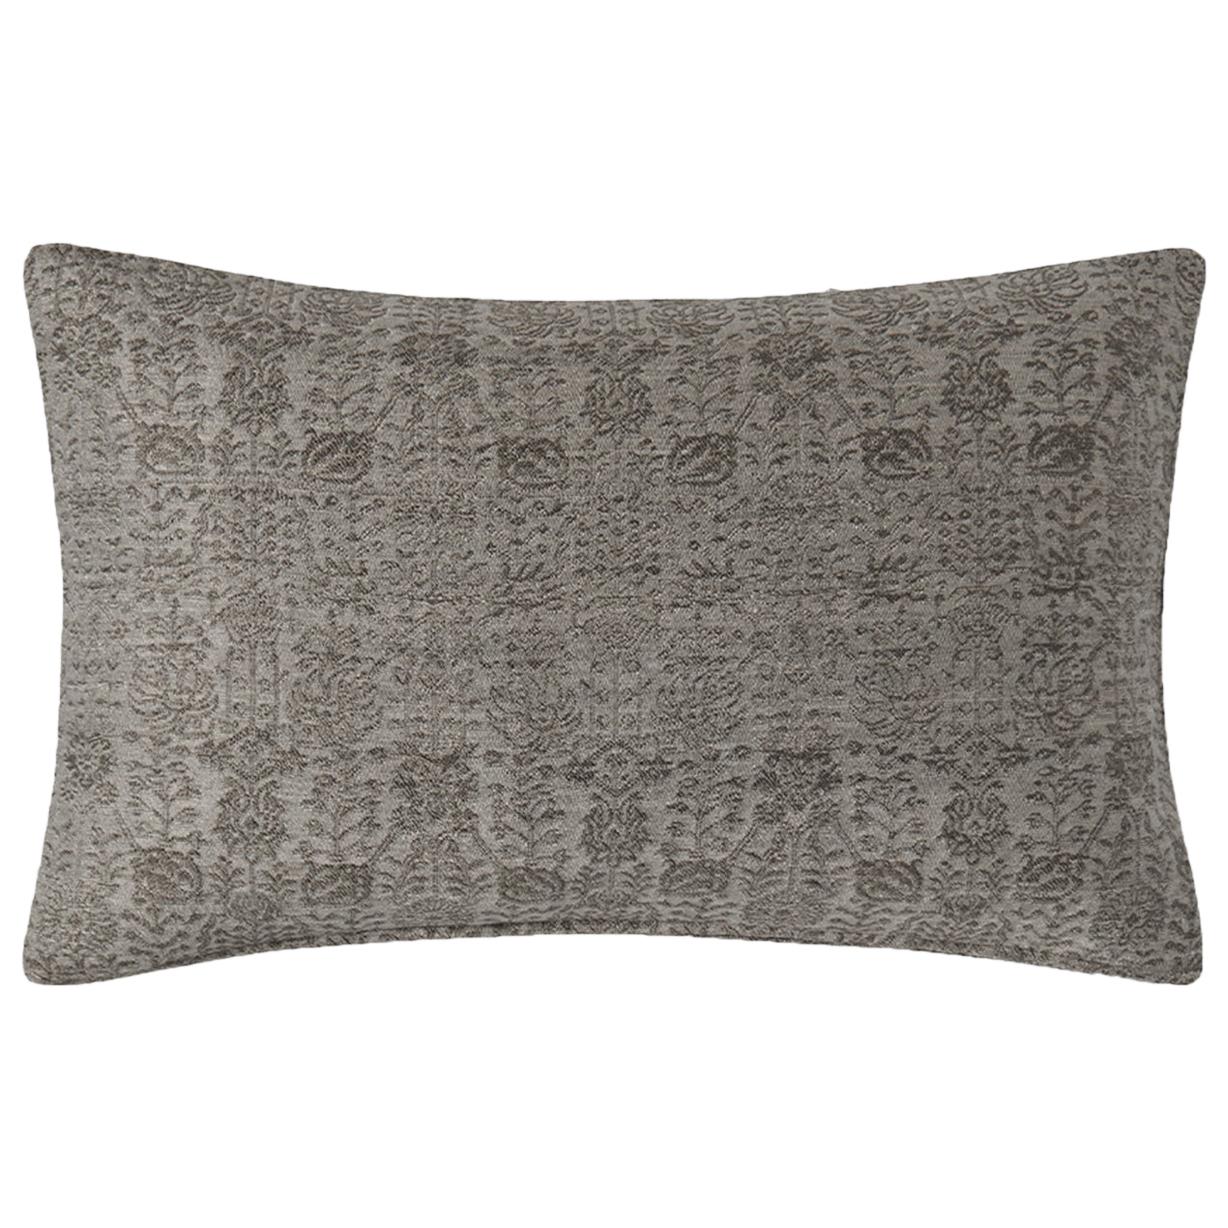 Ben Soleimani Abra Pillow Cover - Graphite 13"x21" For Sale